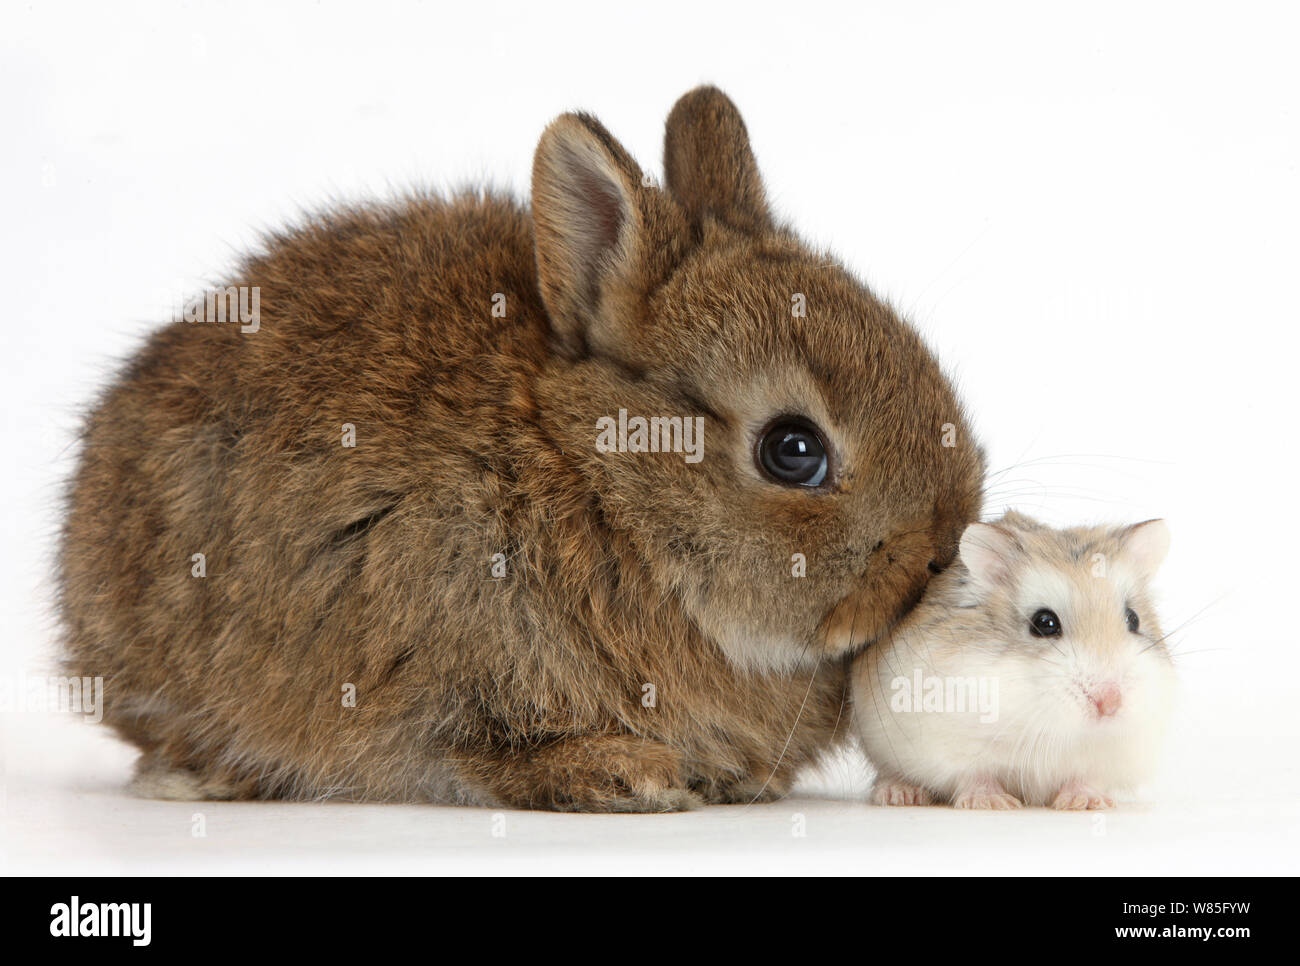 Netherland bebé conejo enano con un hámster Roborovski (Phodopus roborovskii). Foto de stock